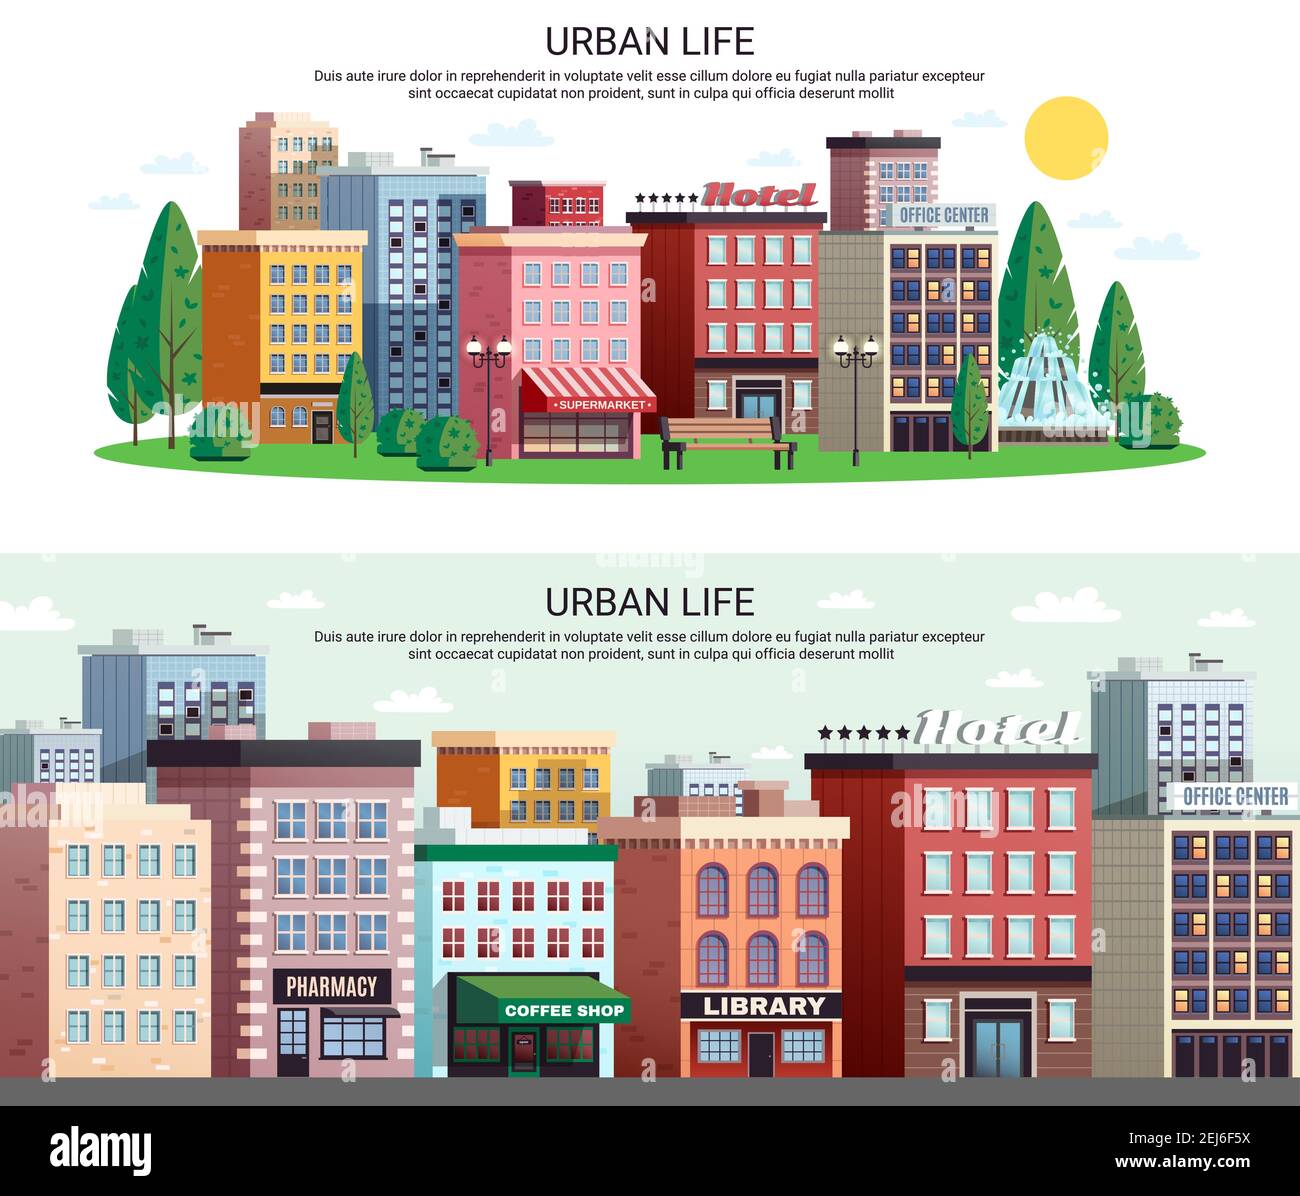 Banner orizzontali vita urbana con pittoresca area commerciale del centro città case con effetto zoom immagine vettoriale isolata Illustrazione Vettoriale